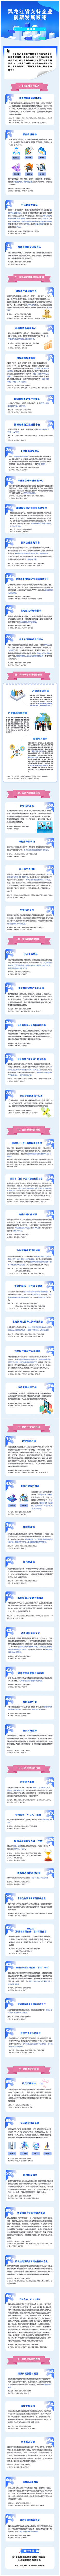 【一图读懂】黑龙江省支持企业创新发展政策插图